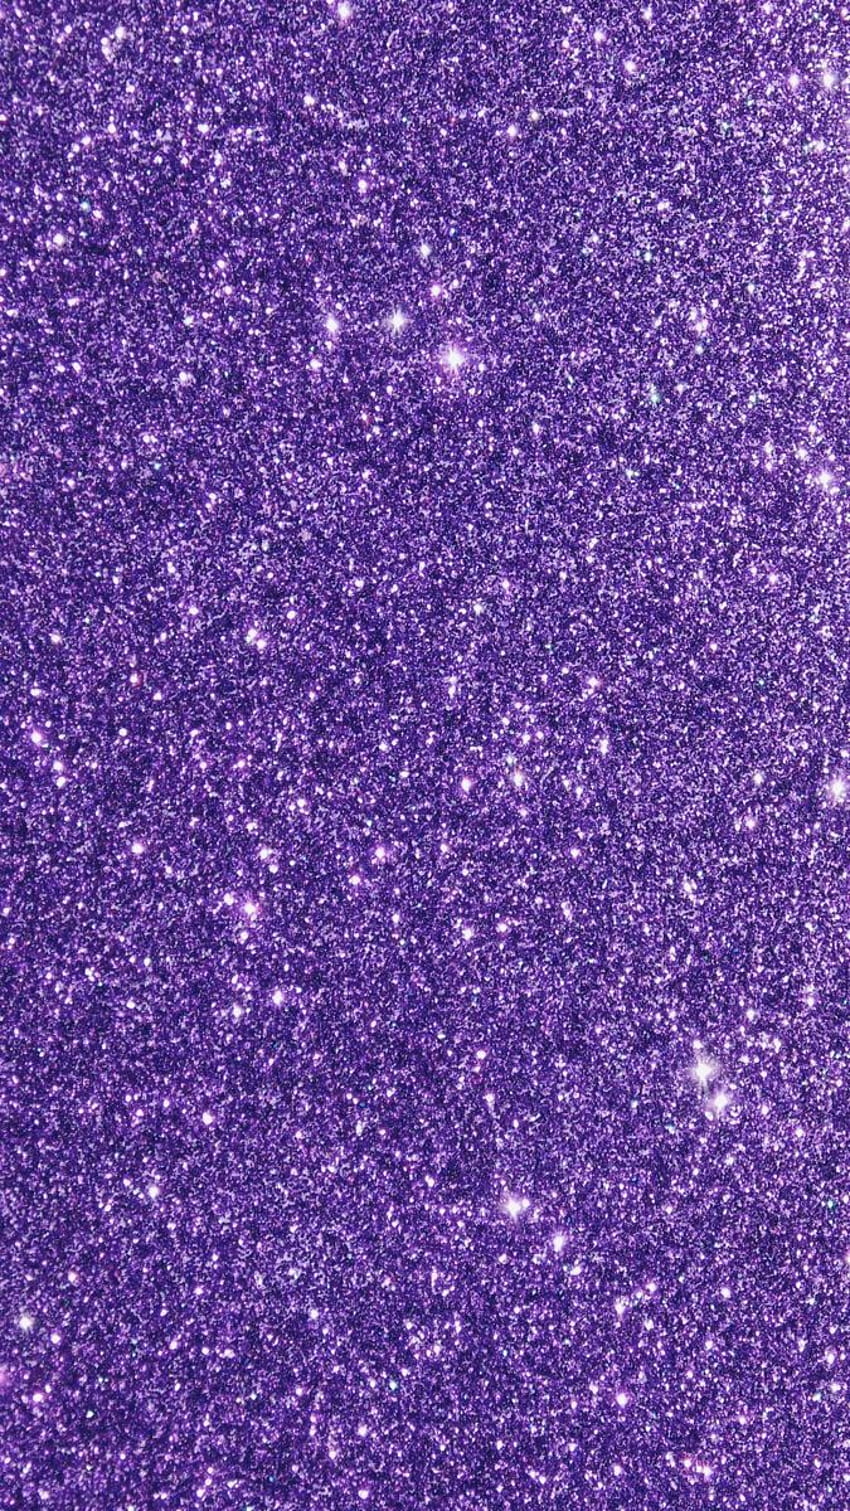 Bắt đầu cuộc phiêu lưu trong hình ảnh với Purple Glitter Background huyền thoại. Bạn sẽ được trải nghiệm tất cả sức mạnh tạo nên sự lung linh của màu tím và lấp lánh.